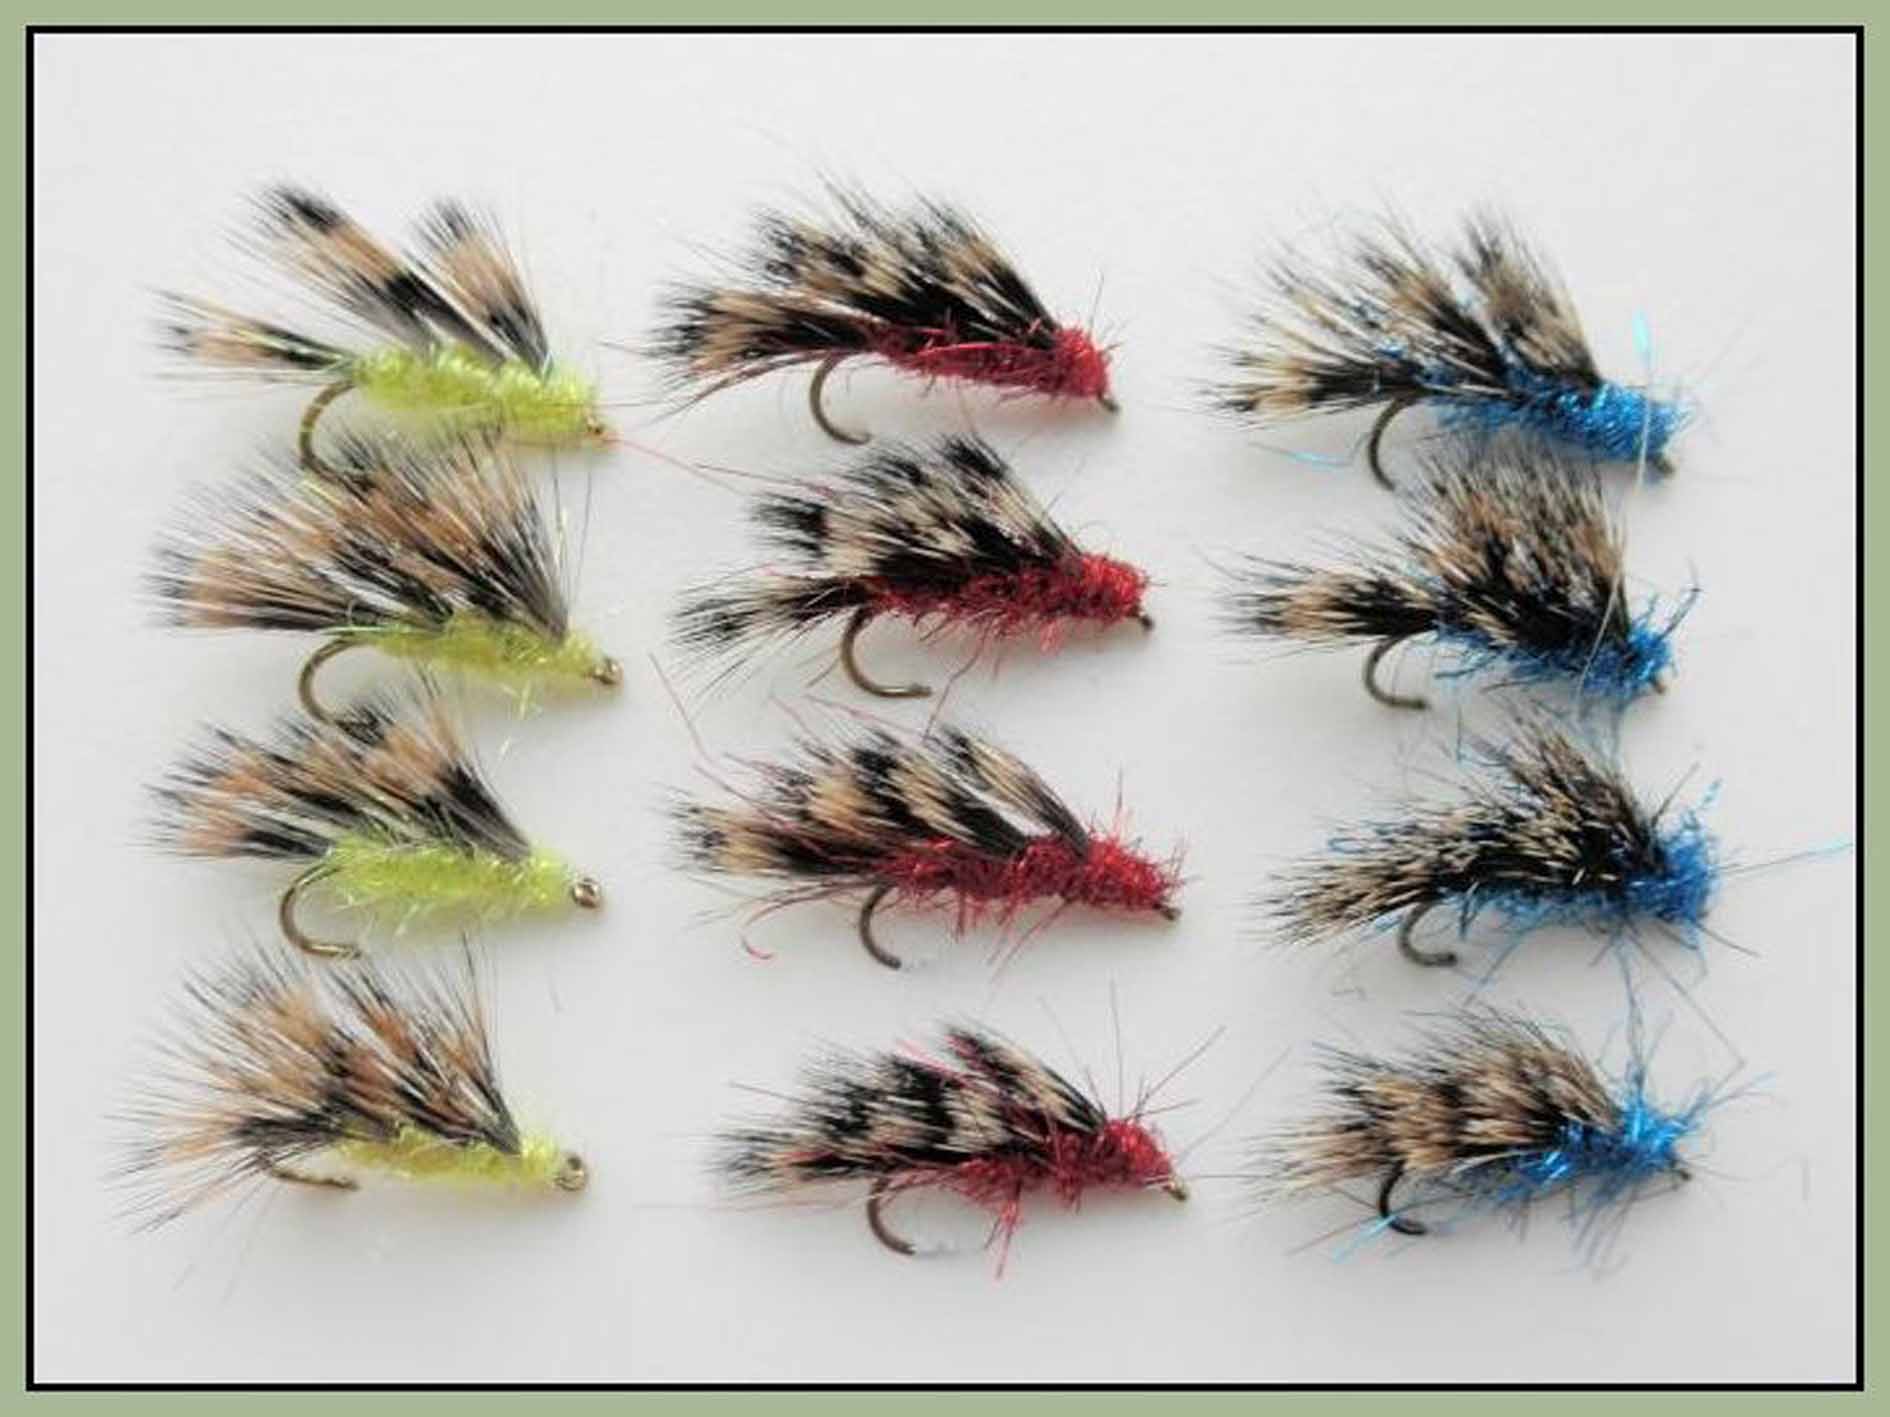 dry sedgehog or halfhog trout fishing flies - Troutflies UK